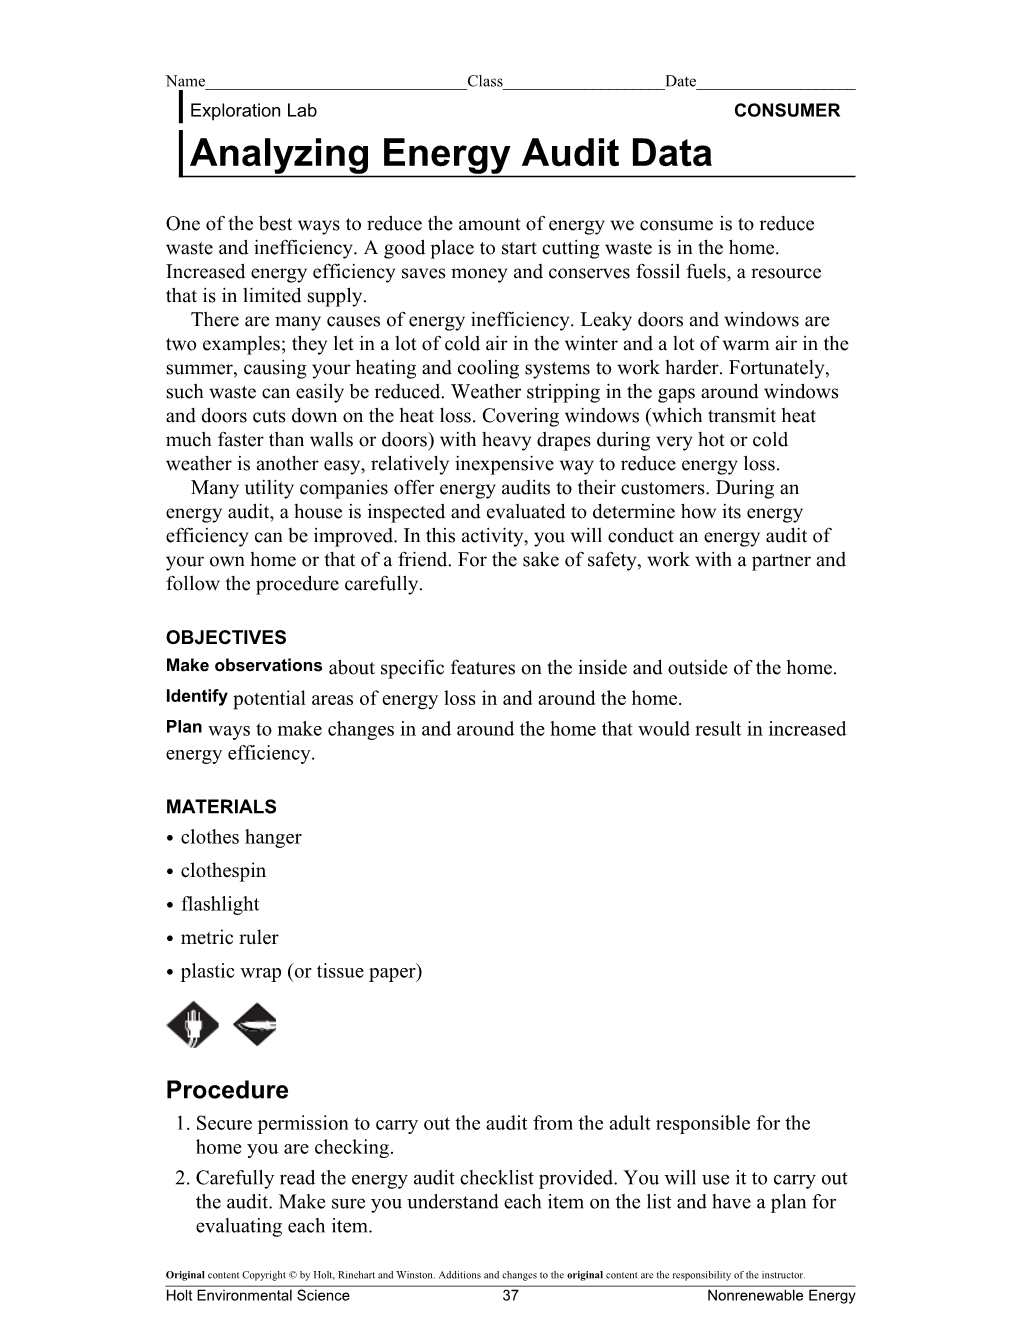 Analyzing Energy Audit Data